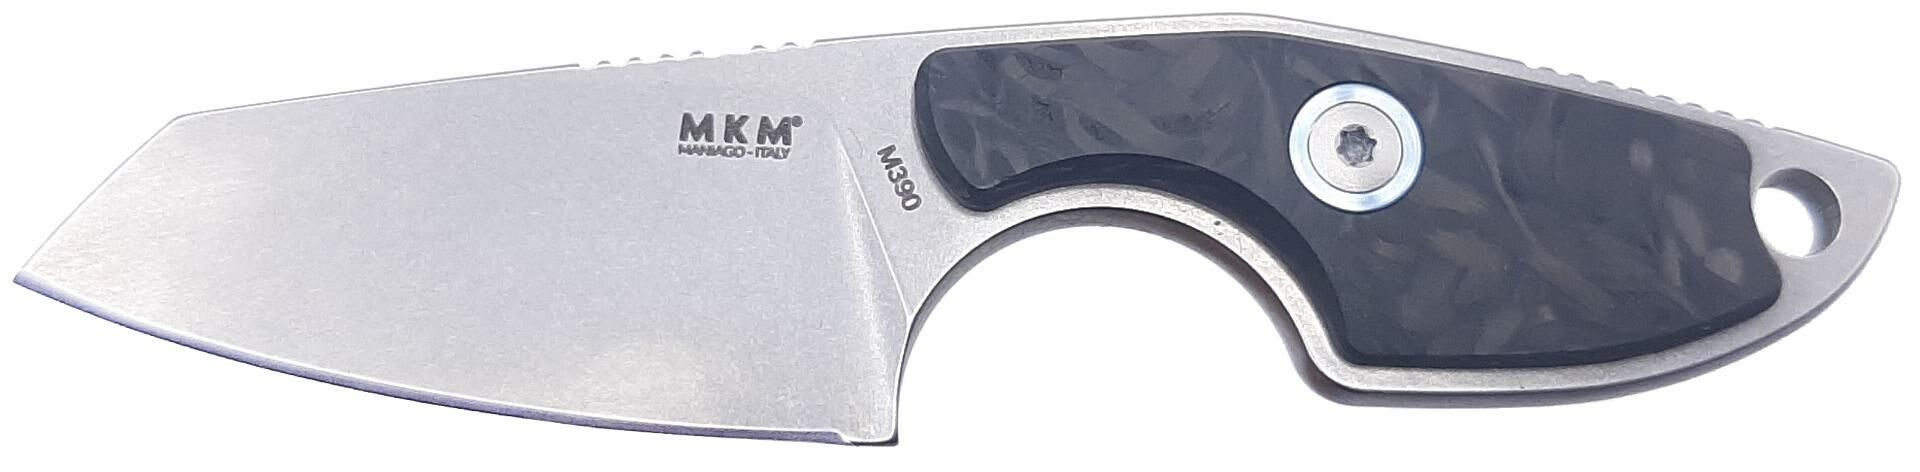 MKM MIKRO 2 Carbon Fiber Bıçak